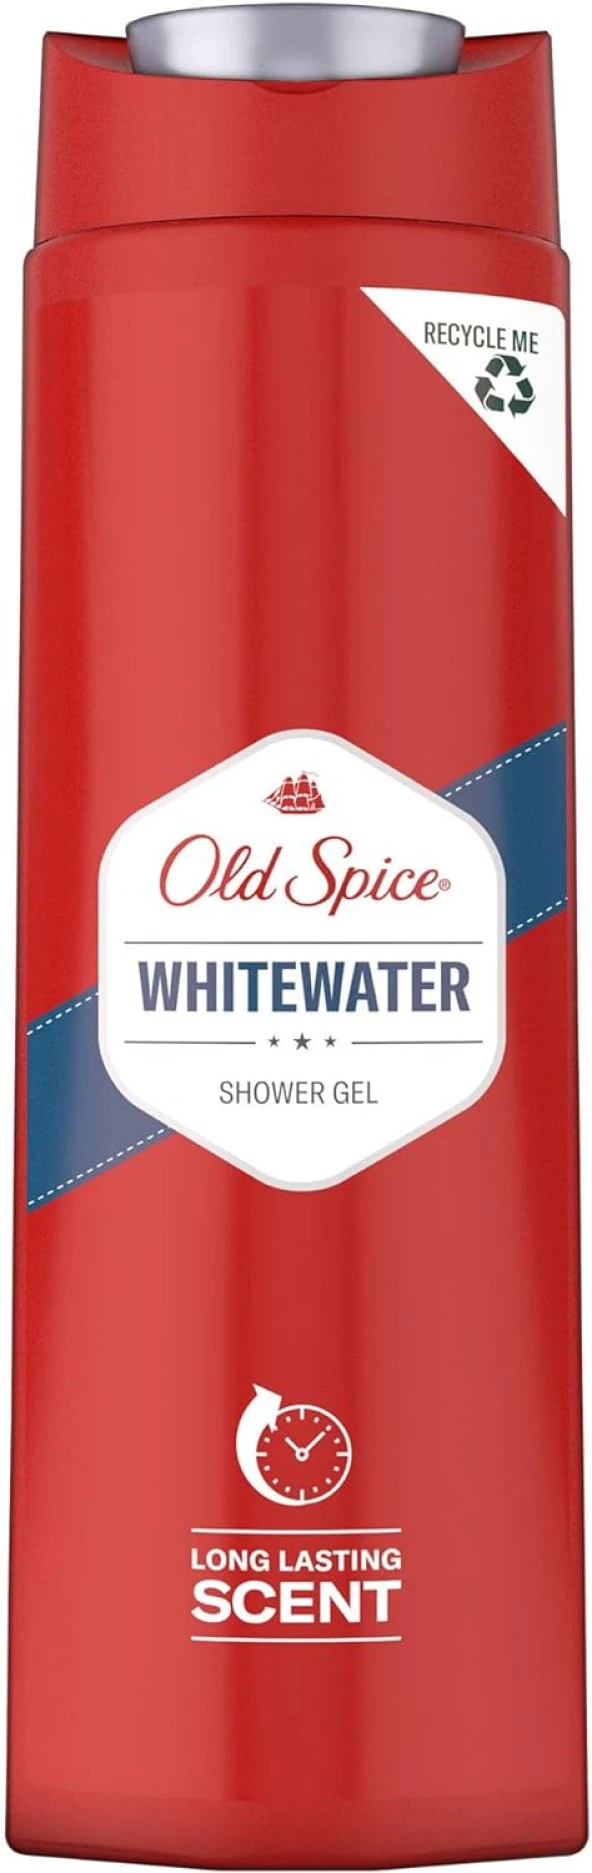 Spice Whitewater Erkek İçin Duş Jeli, 400 ml